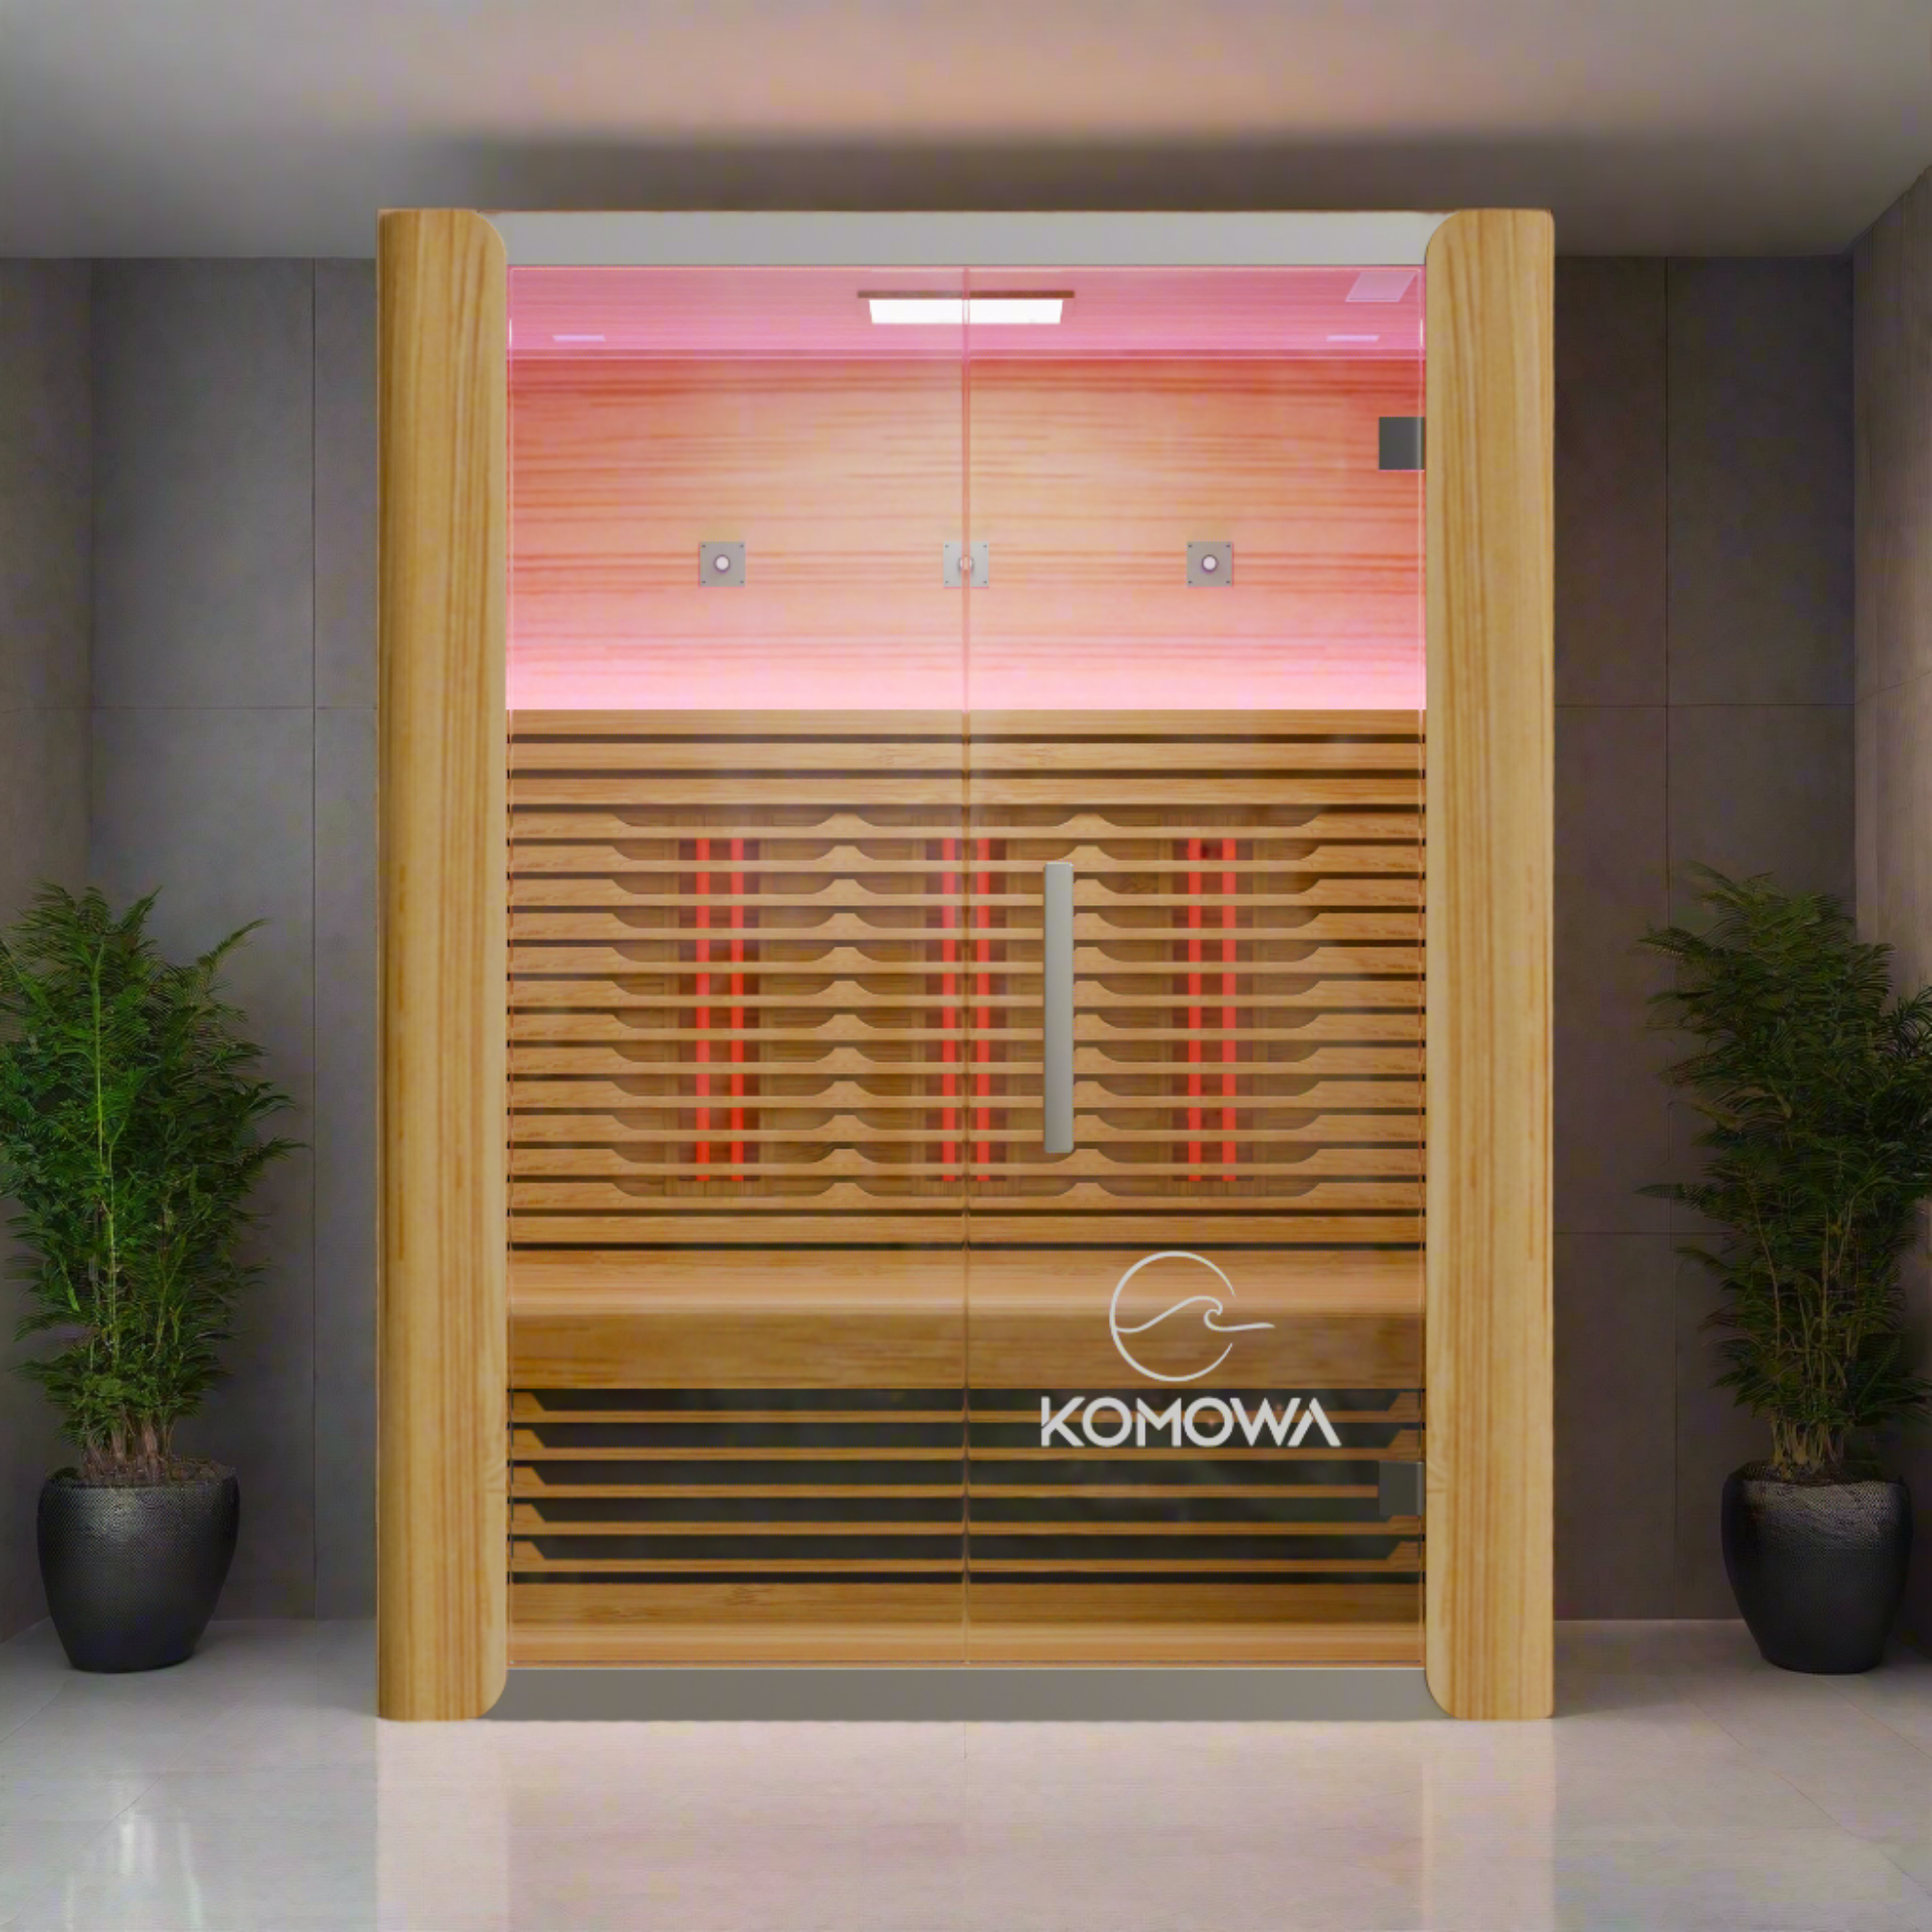 Komowa Como Series Infrared Sauna